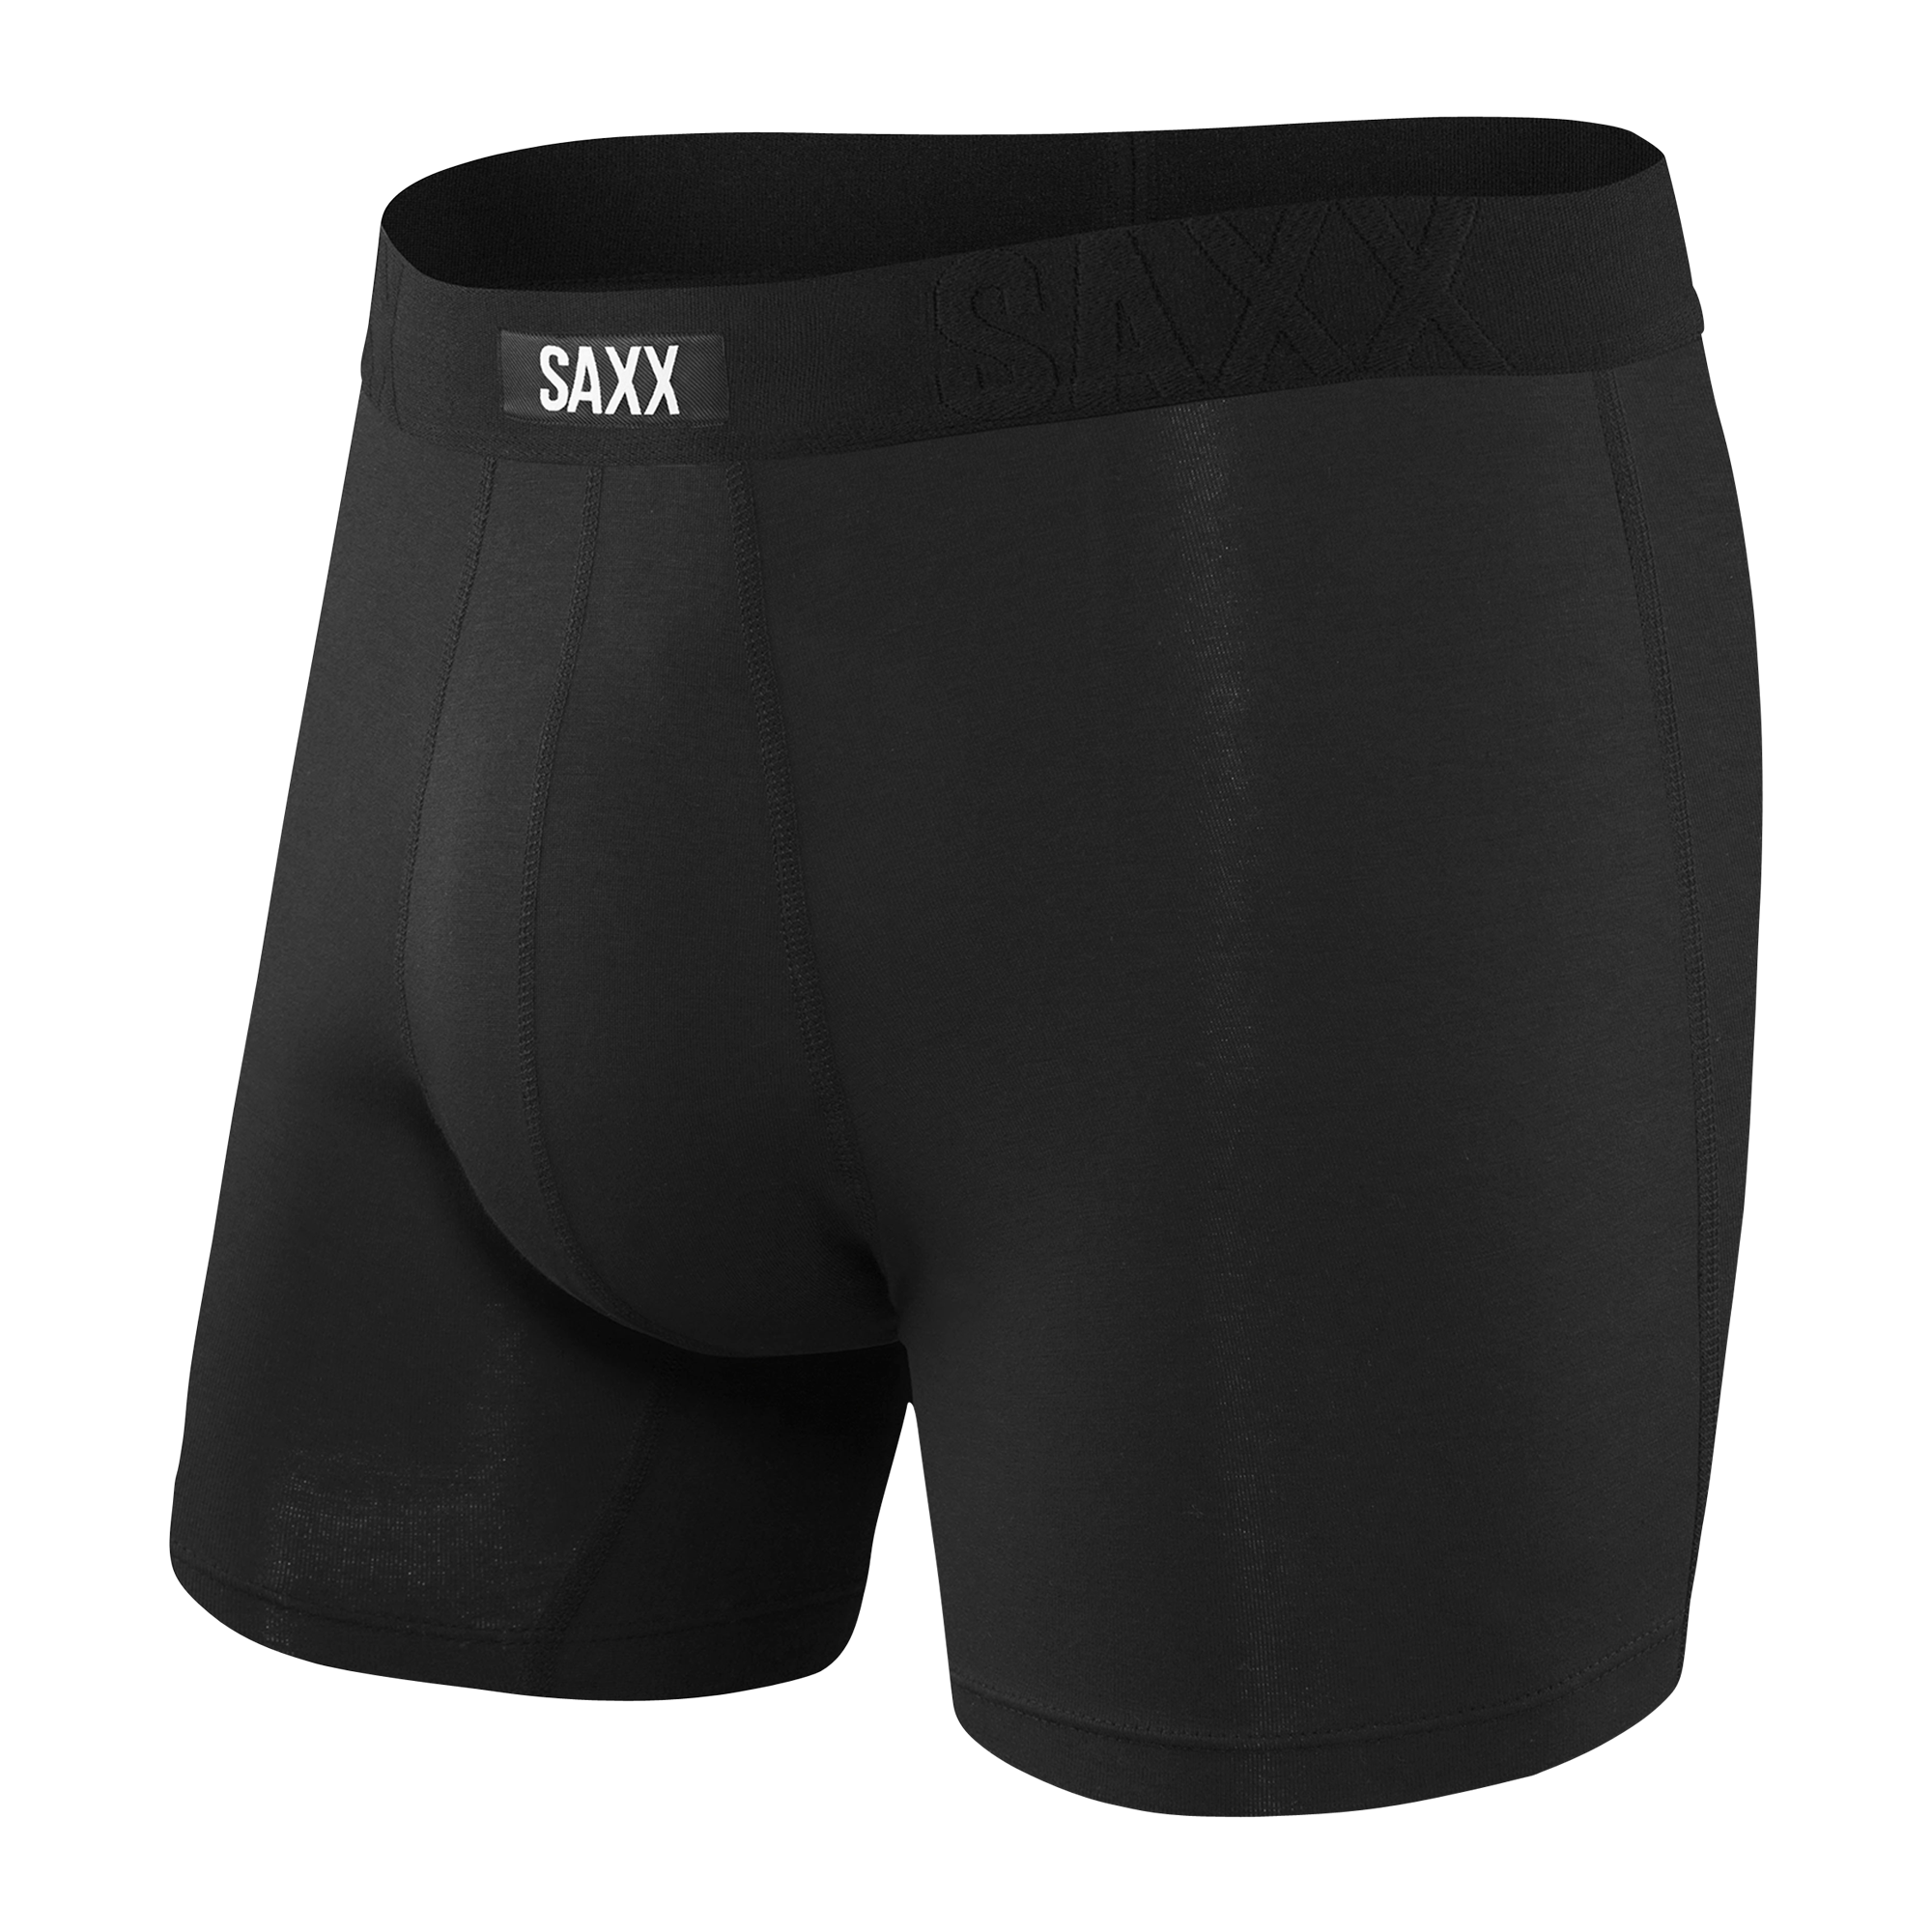 Saxx Undercover Cotton - Underwear - Men's